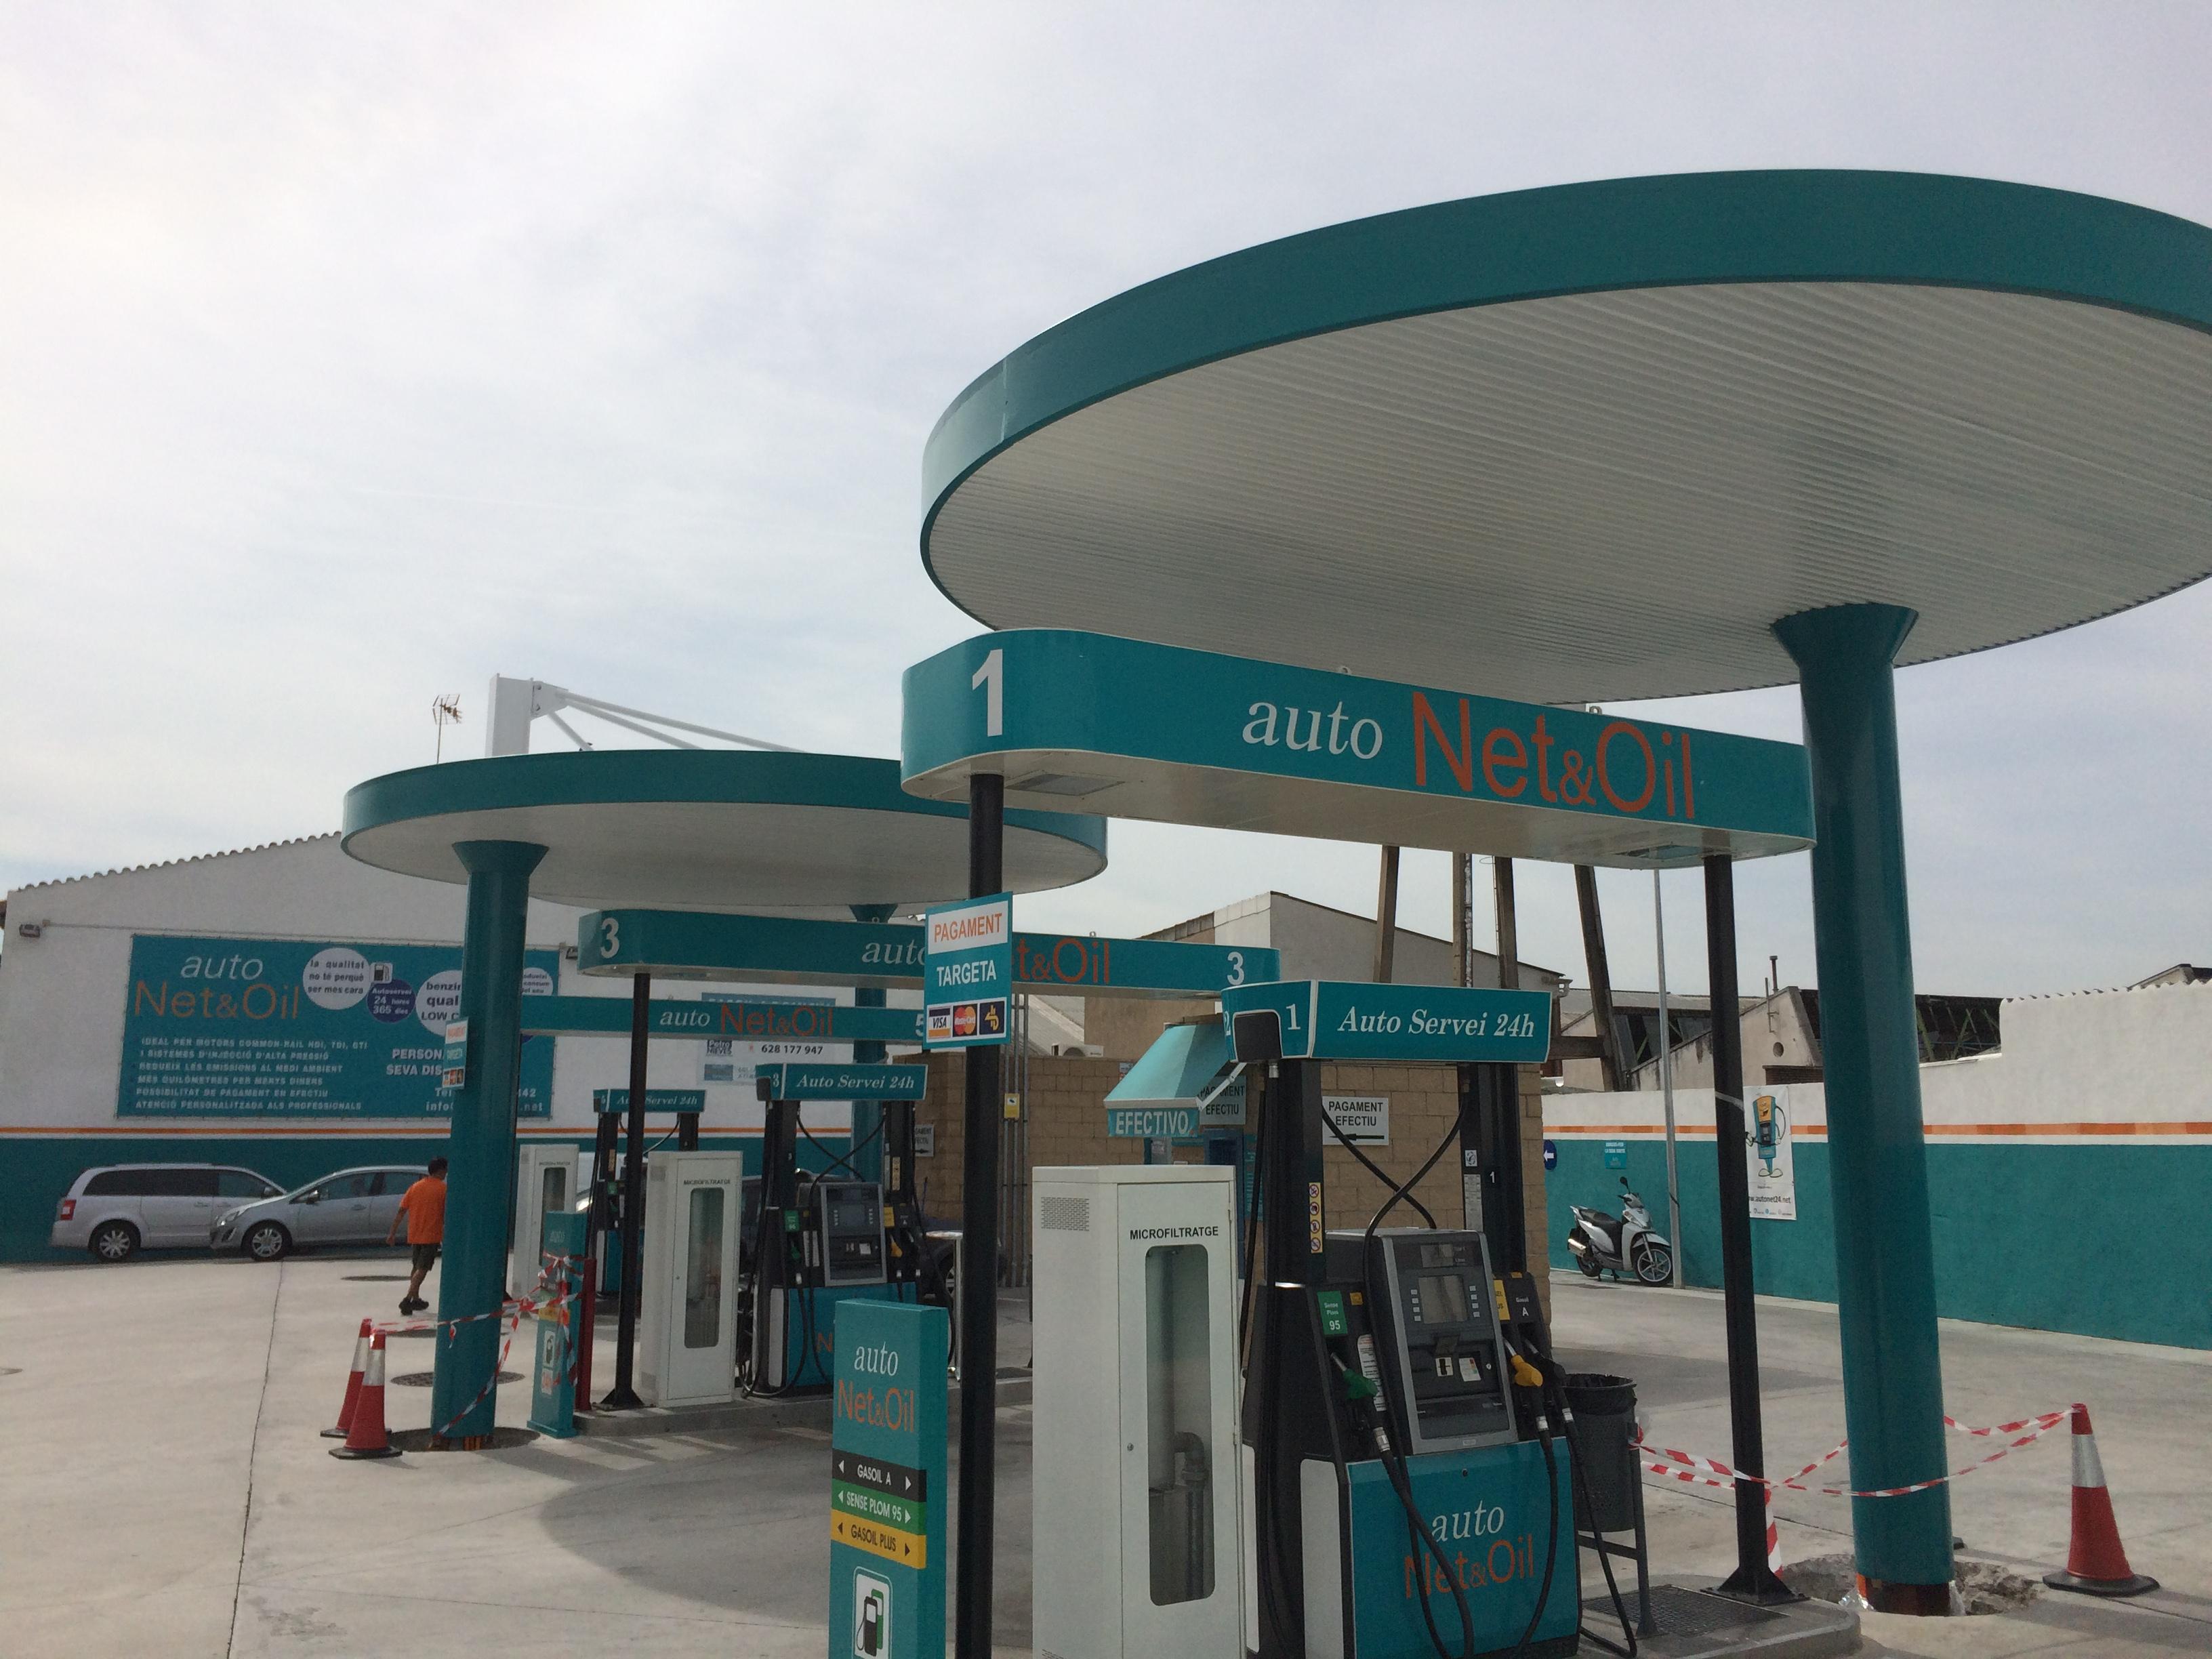 La gasolinera Autonet&Oil, de A Grela, es una de las más baratas.